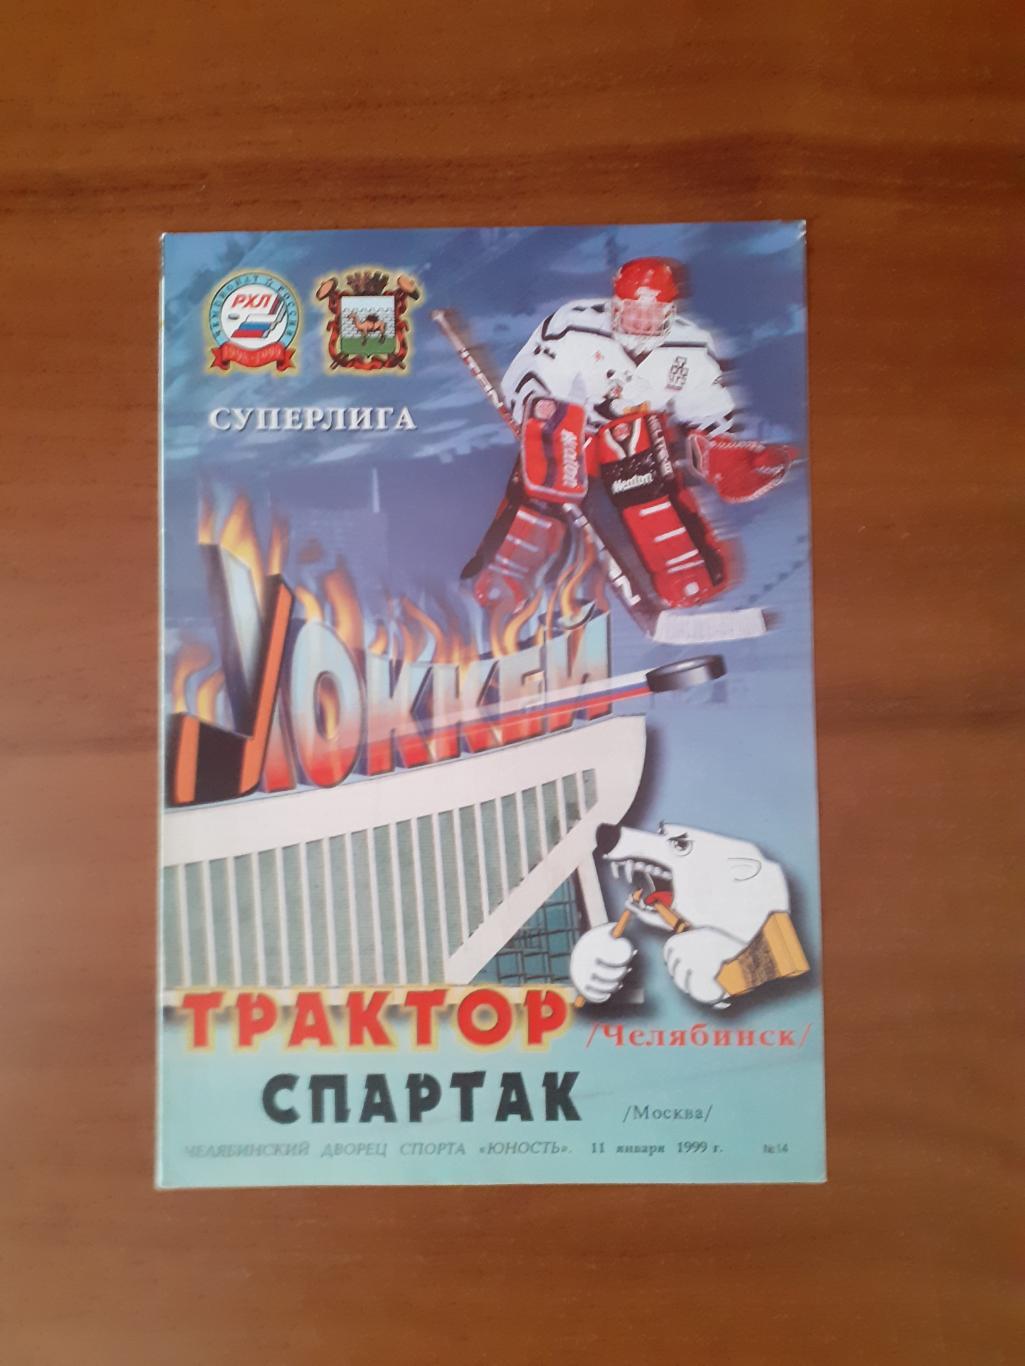 Трактор Челябинск - Спартак Москва - 11 января 1999г.